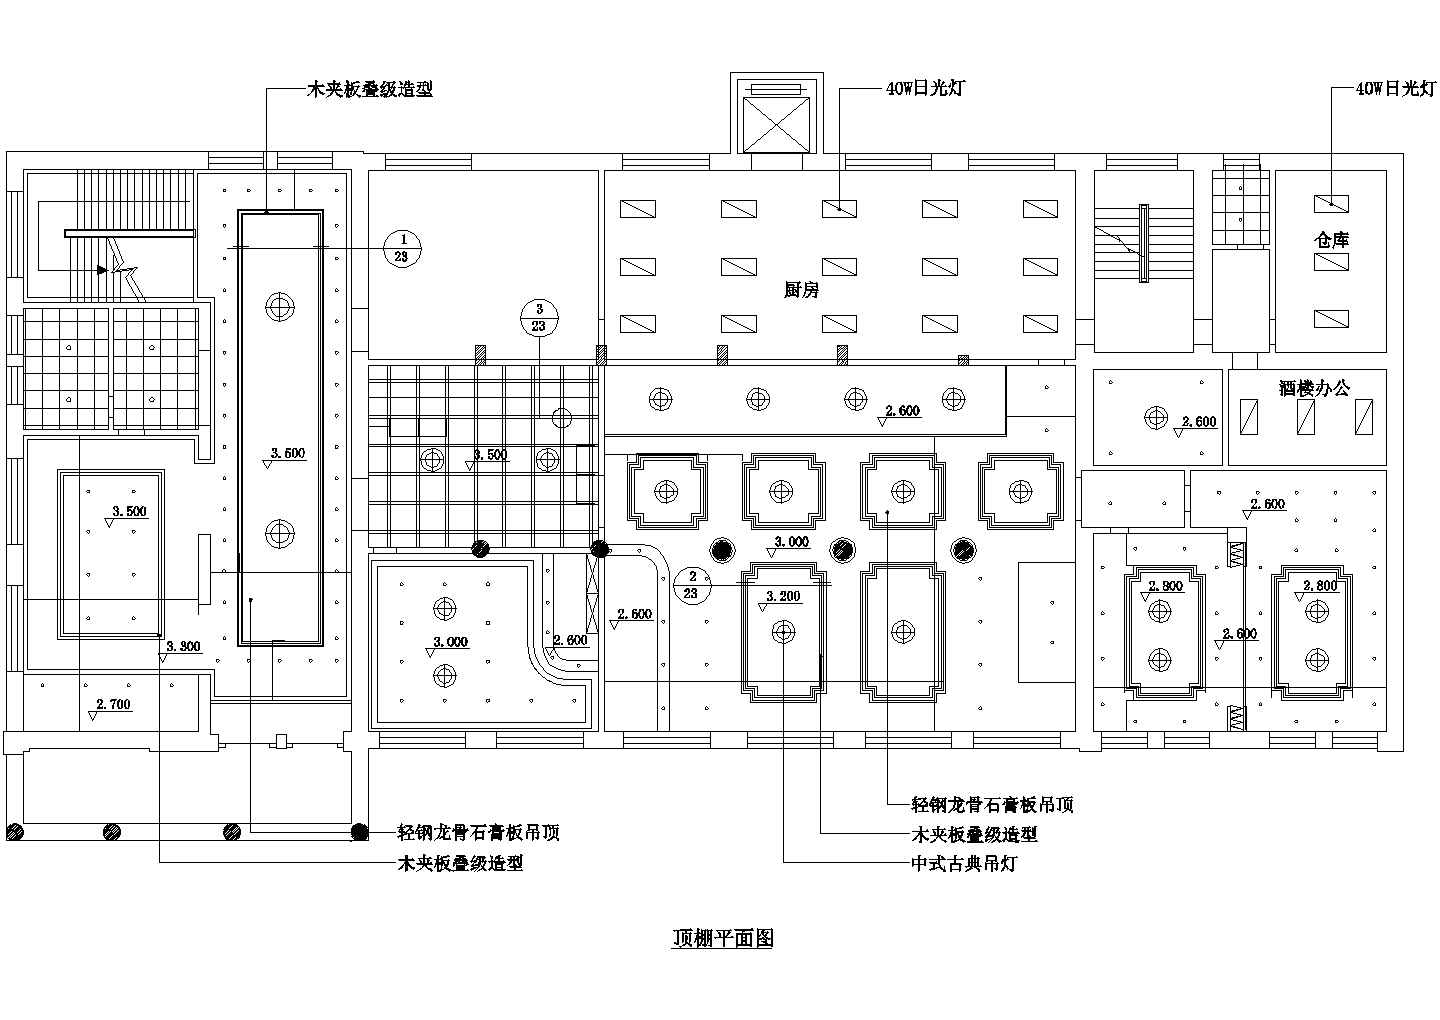 上海南京路某高档西餐厅全套装修施工设计CAD图纸